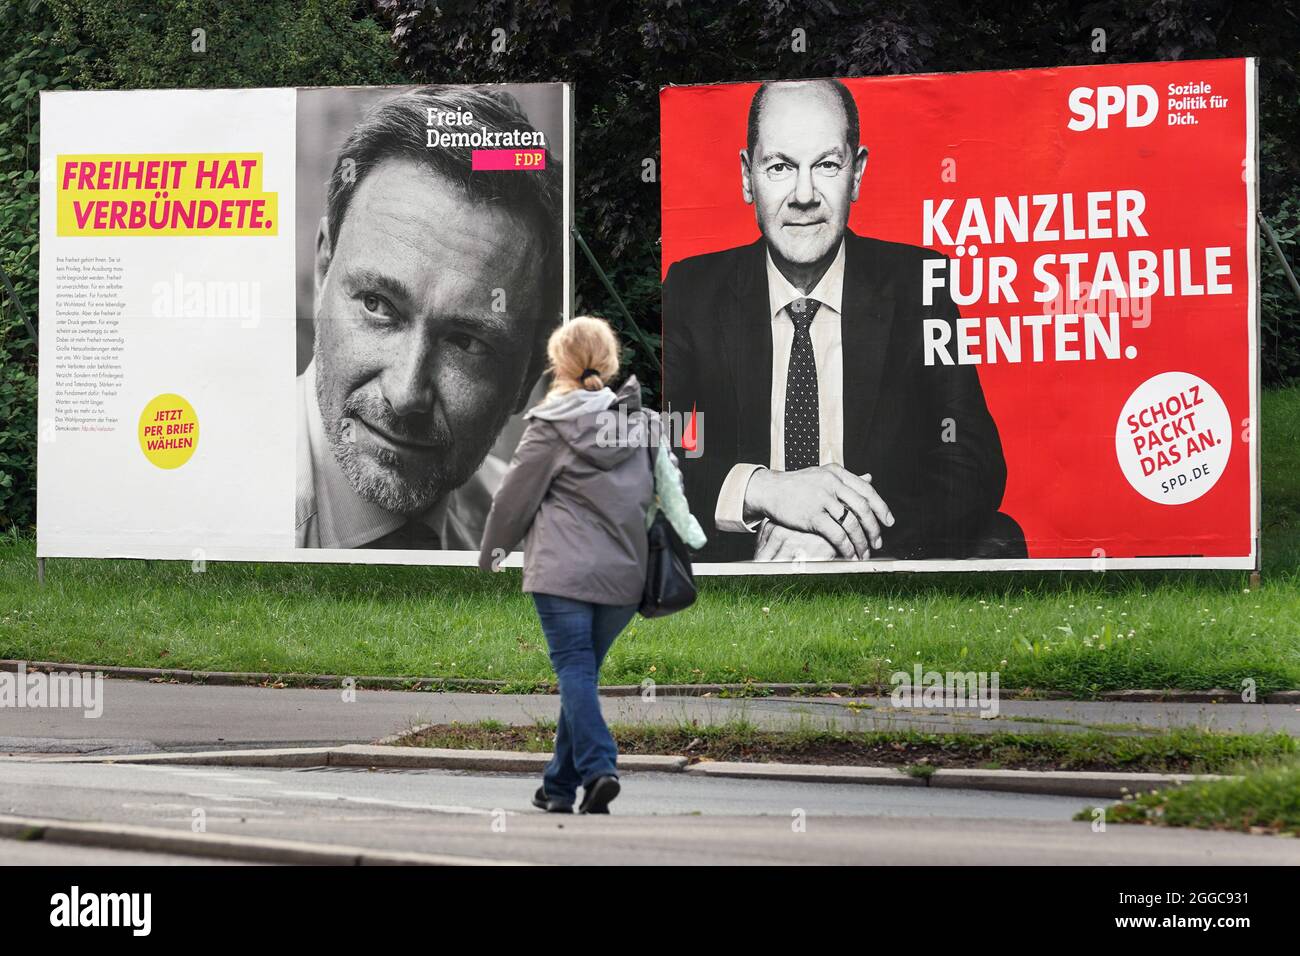 Bundestagswahl 2021, Wahlplakate der Parteien zur Bundestagswahl am 26.9.2021: FDP (Christian Lindner) und SPD (Olaf Scholz). Dortmund, 30.08.2021 Stockfoto